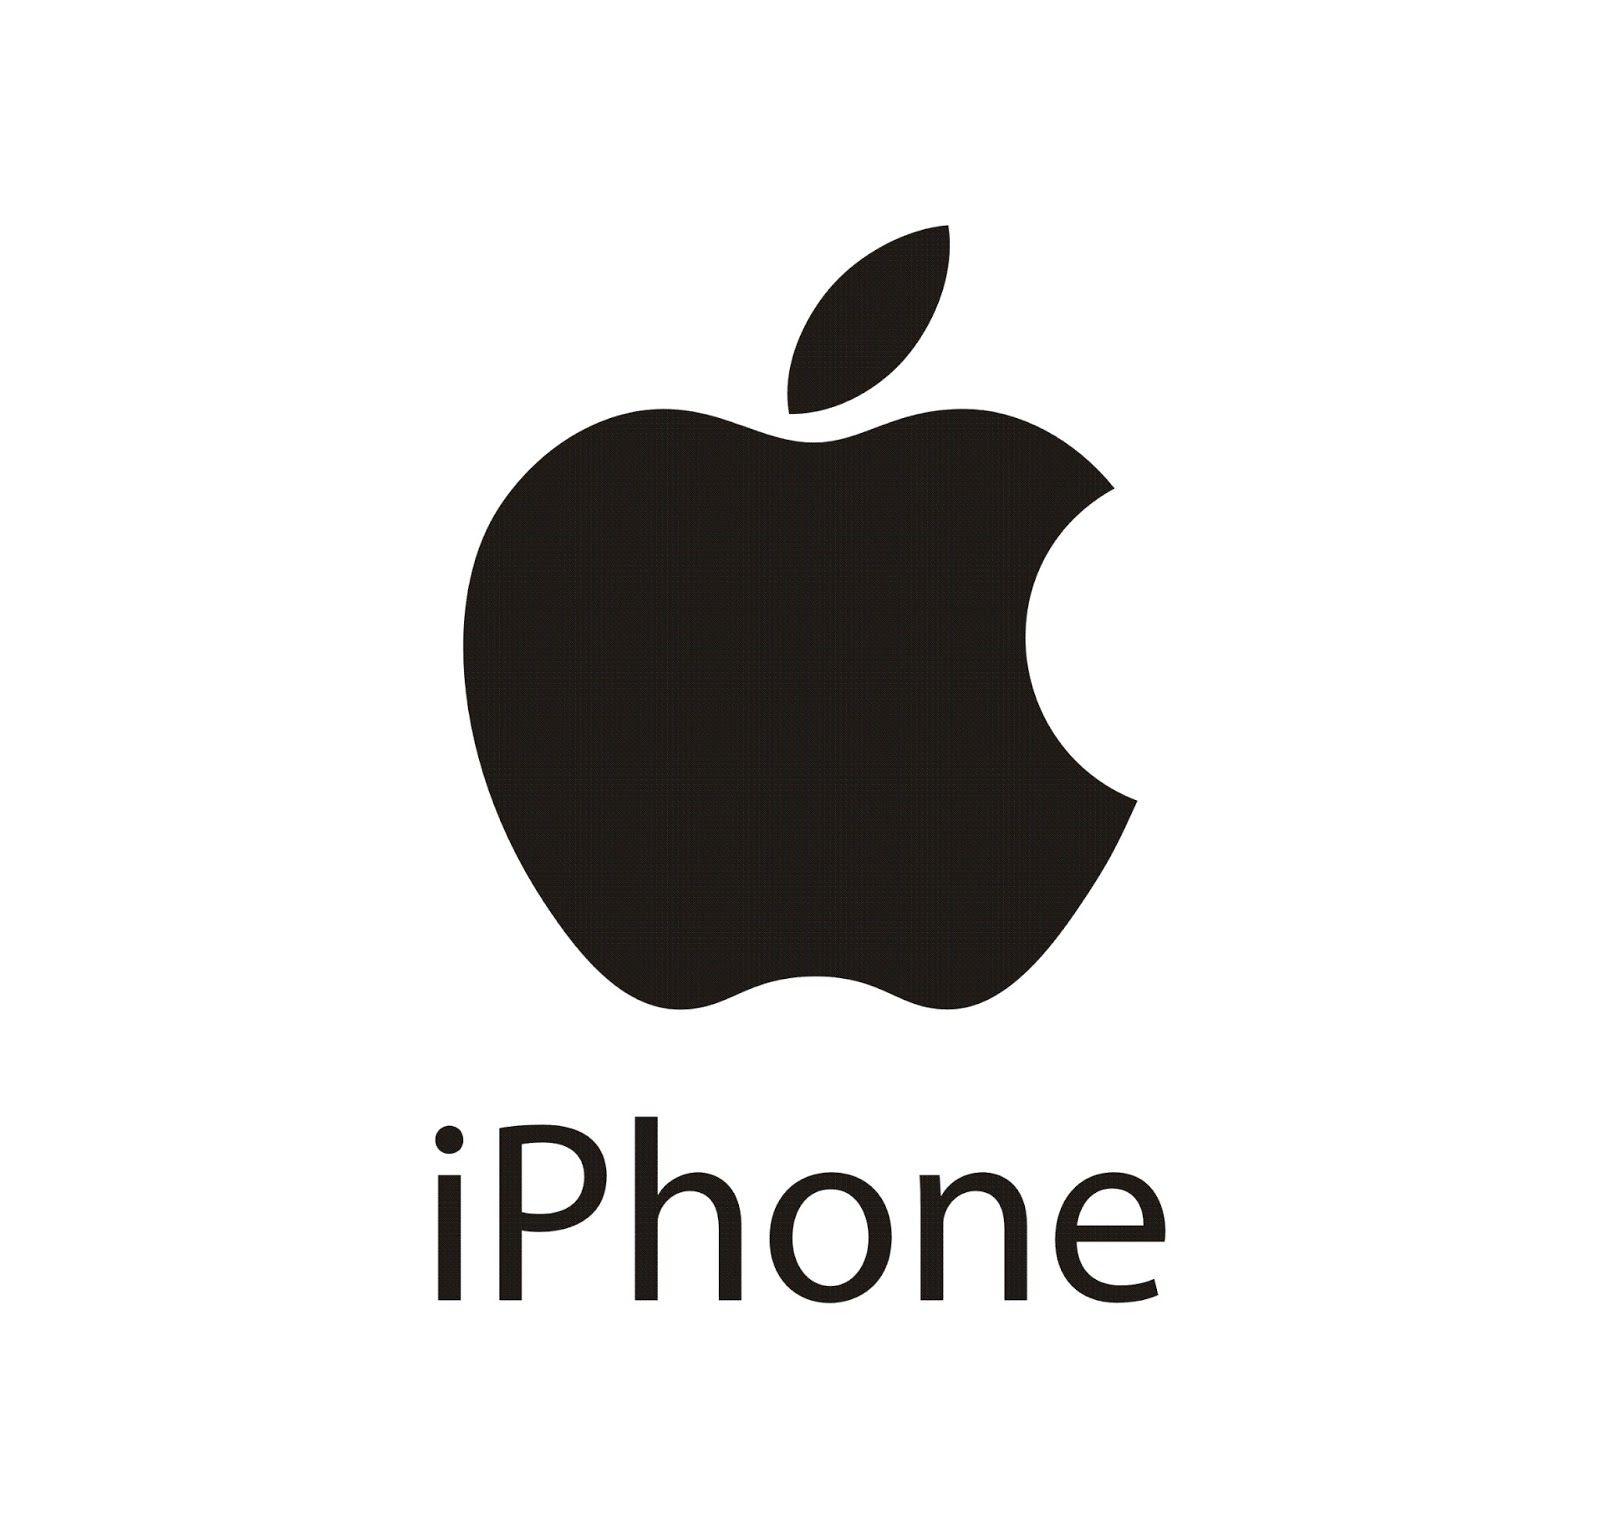 Apple iPhone Logo - iPhone Logo Transparent PNG Logos